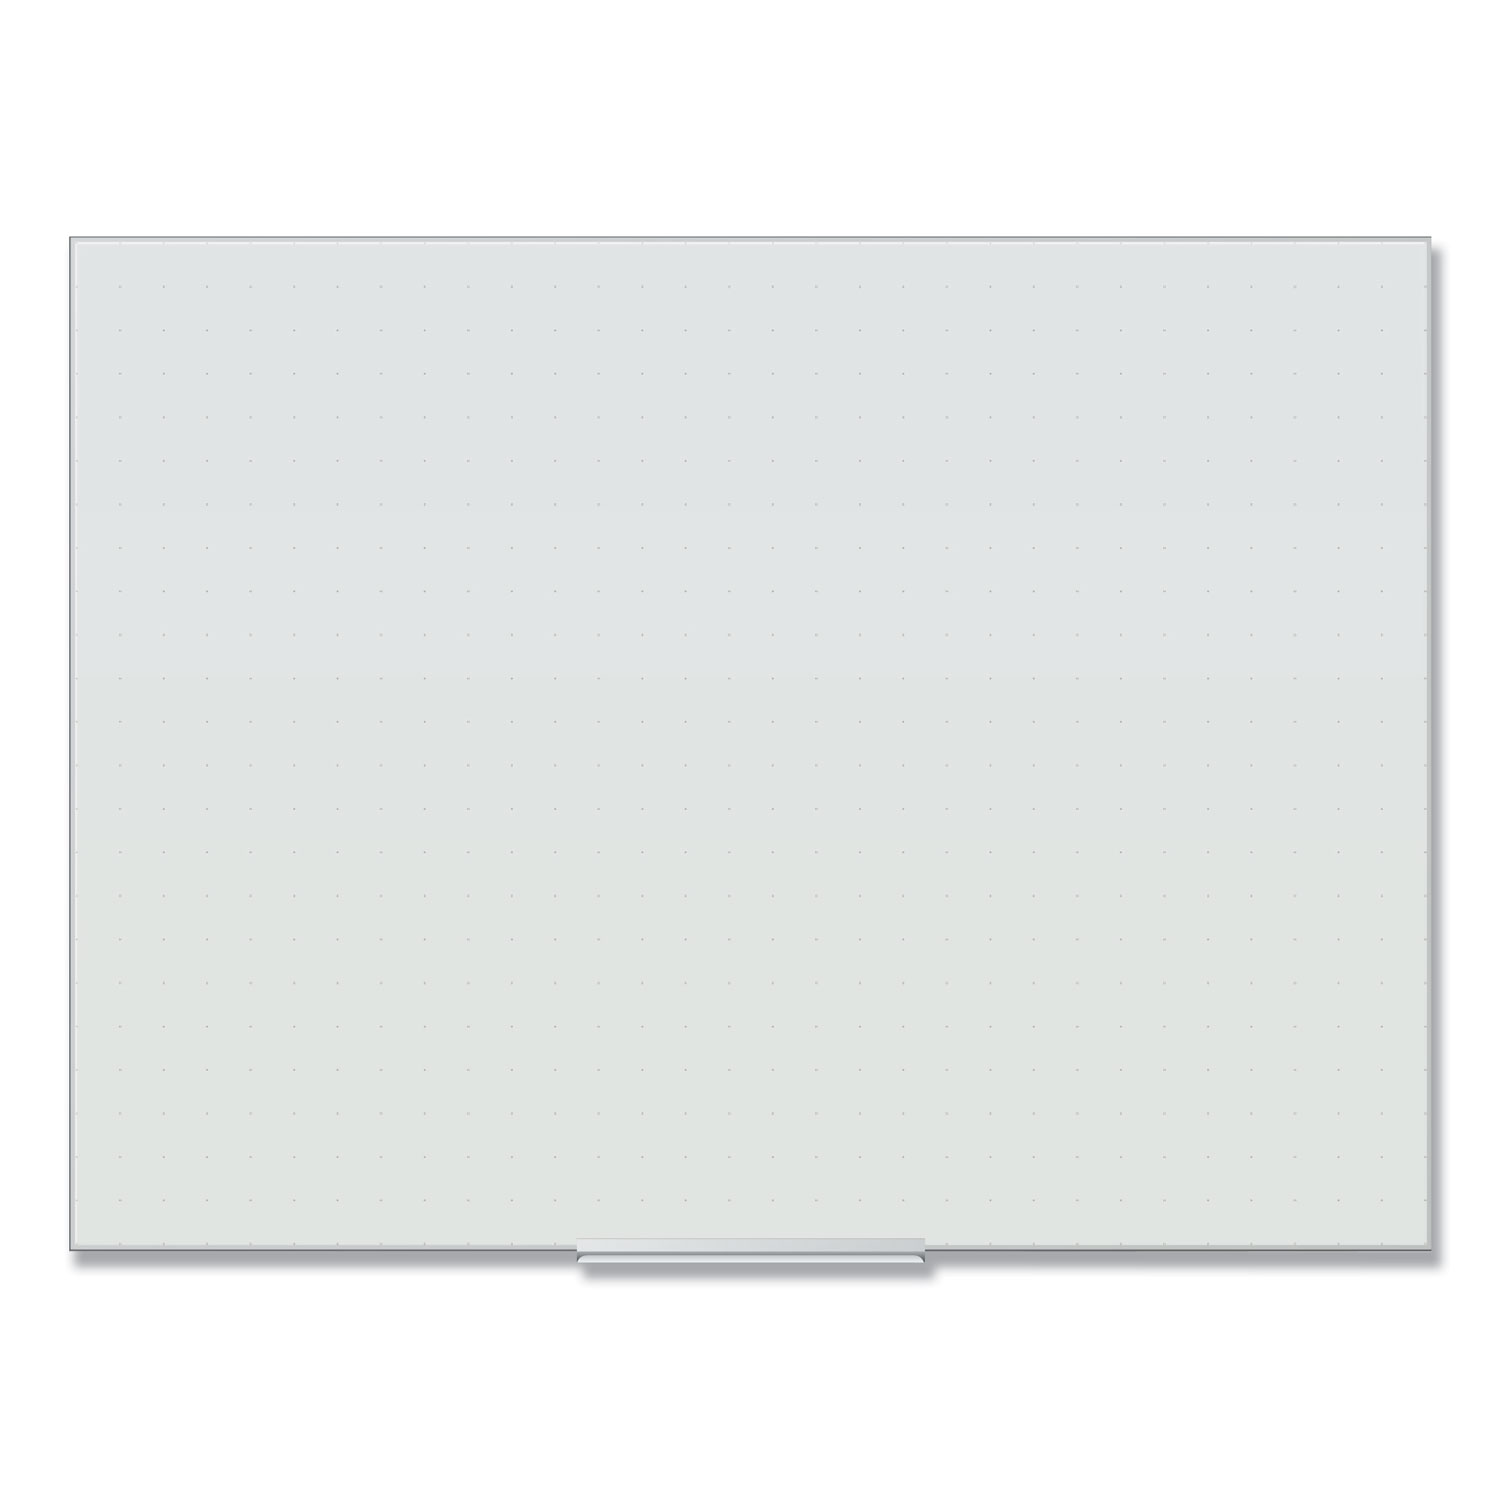  U Brands 2799U00-01 Floating Glass Ghost Grid Dry Erase Board, 48 x 36, White (UBR2799U0001) 